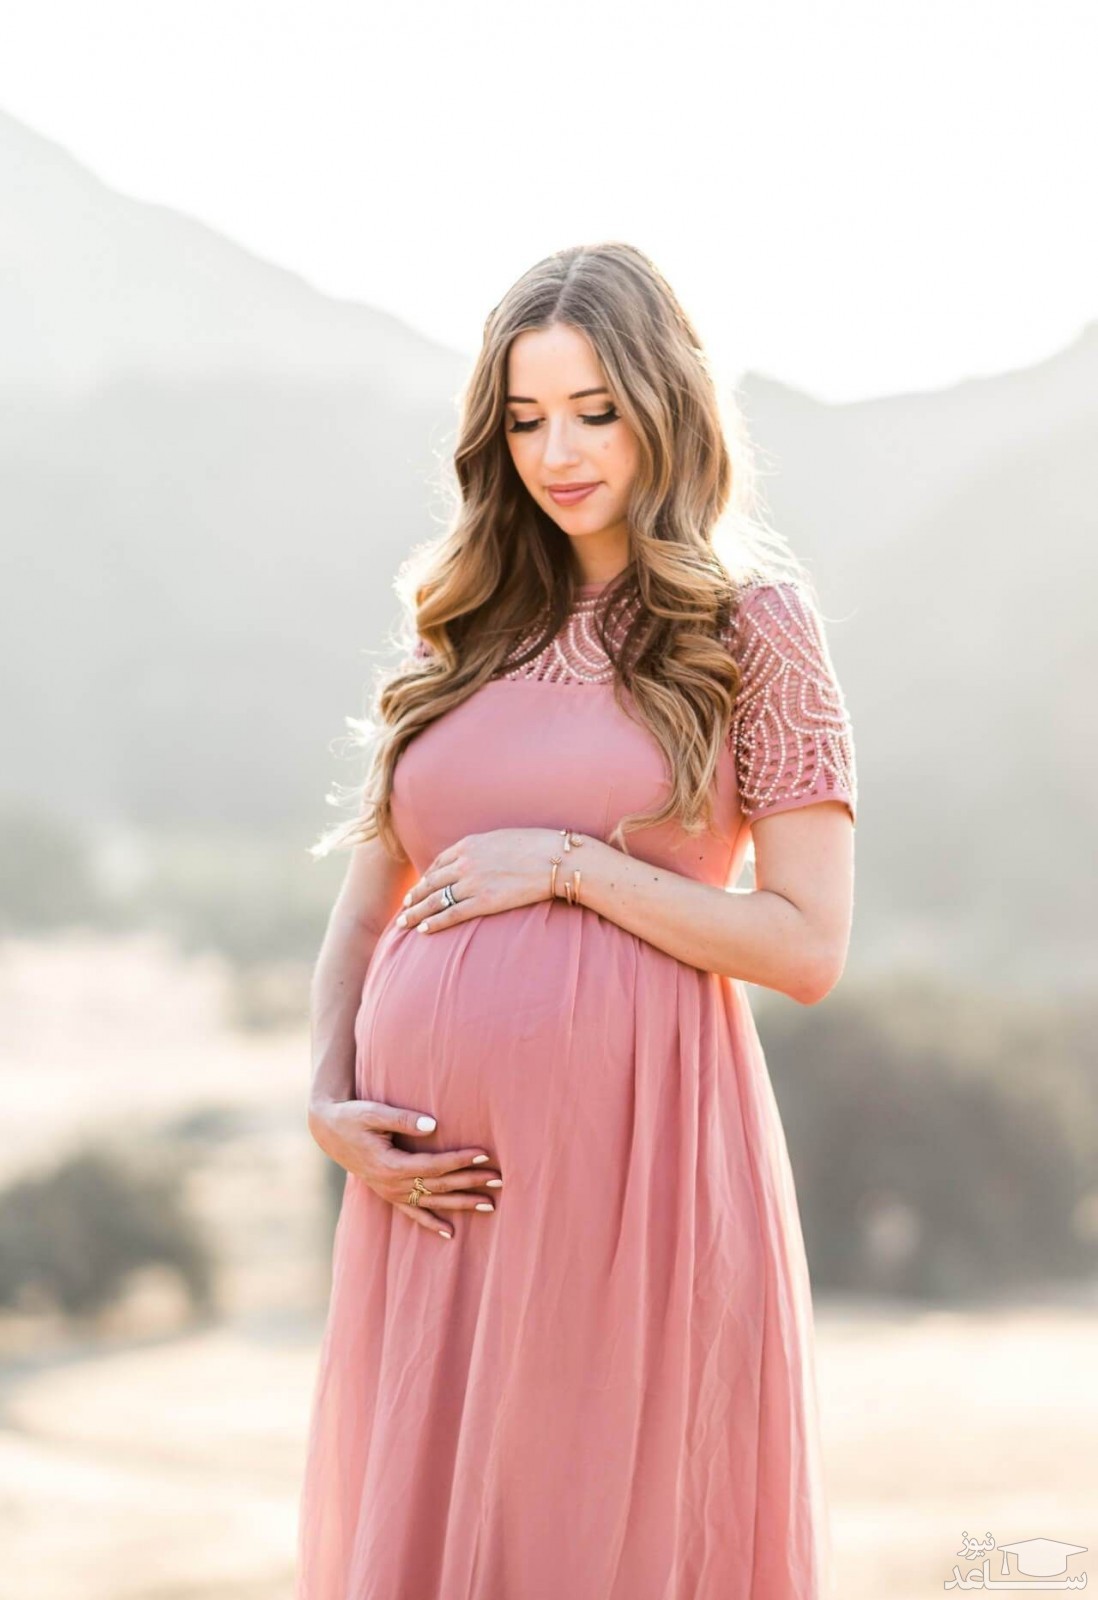 نکاتی برای شیک پوشی در دوران بارداری